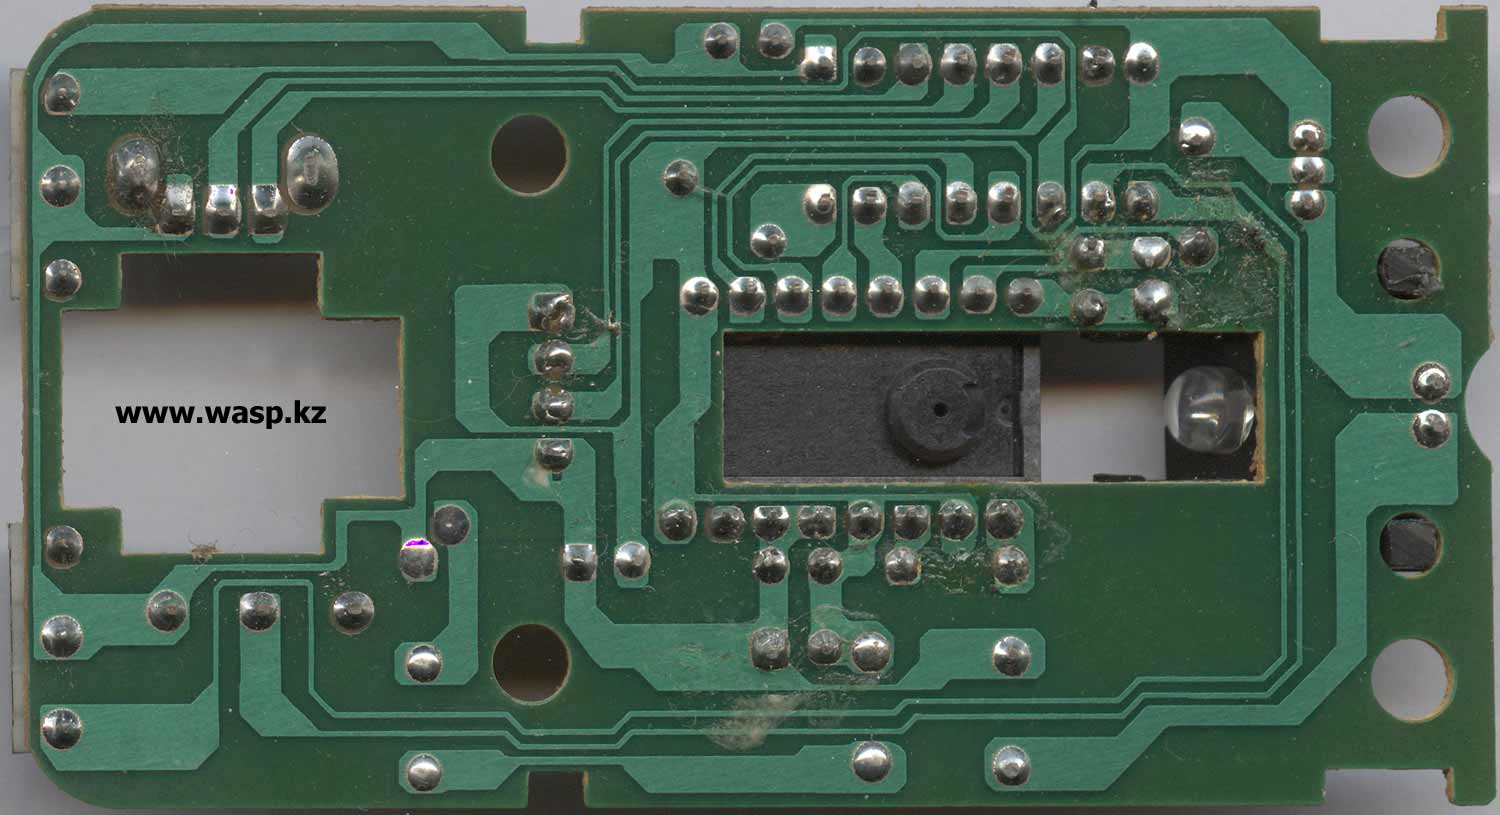 схема мыши на микросхеме CS4510FCP и сенсоре OMO2 0451W BK4CE2